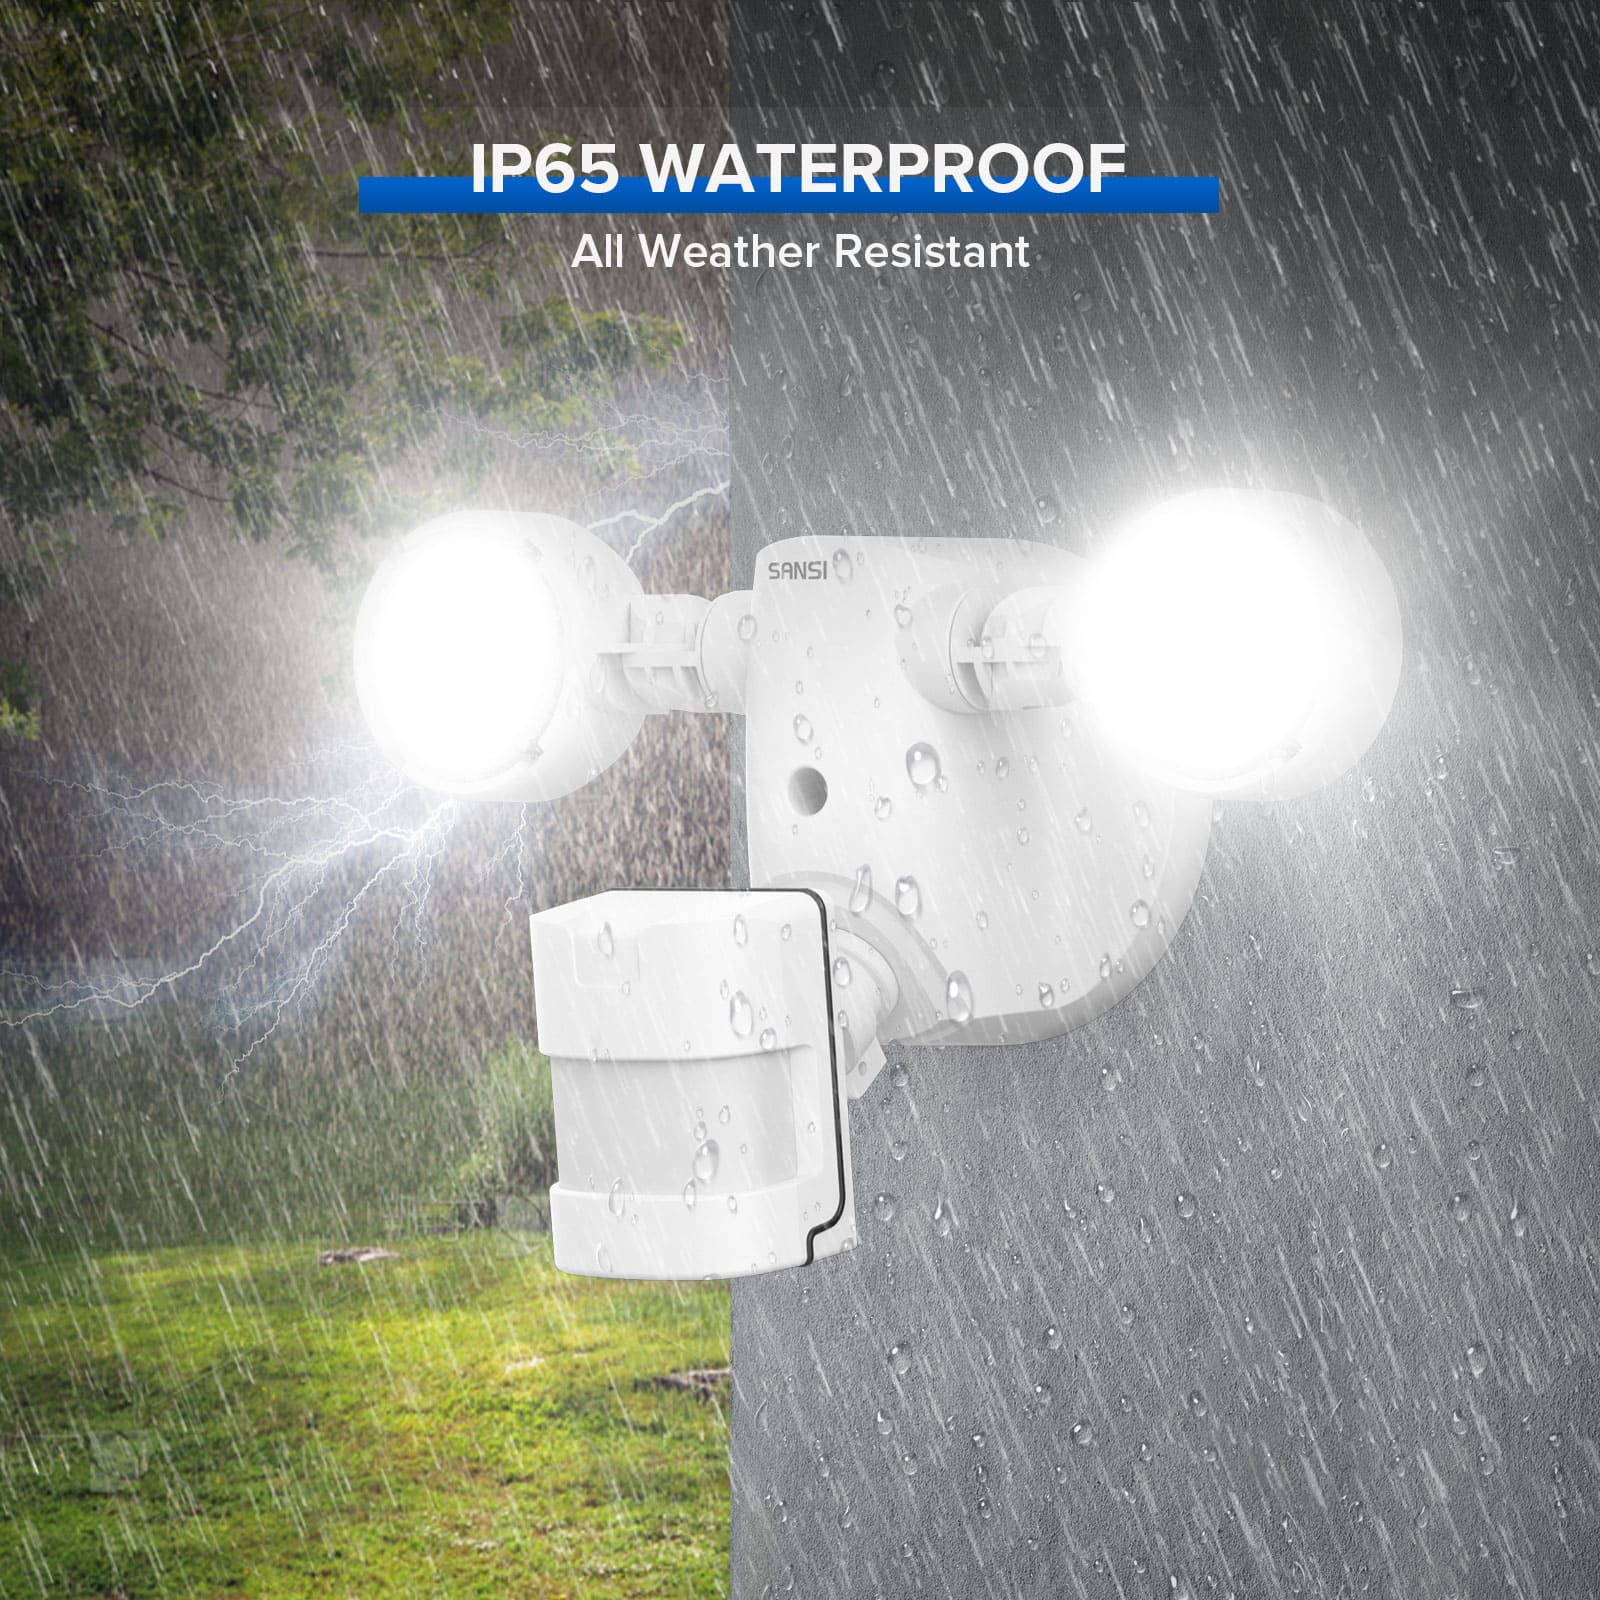 IP65 WATERPROOF,All Weather Resistant.